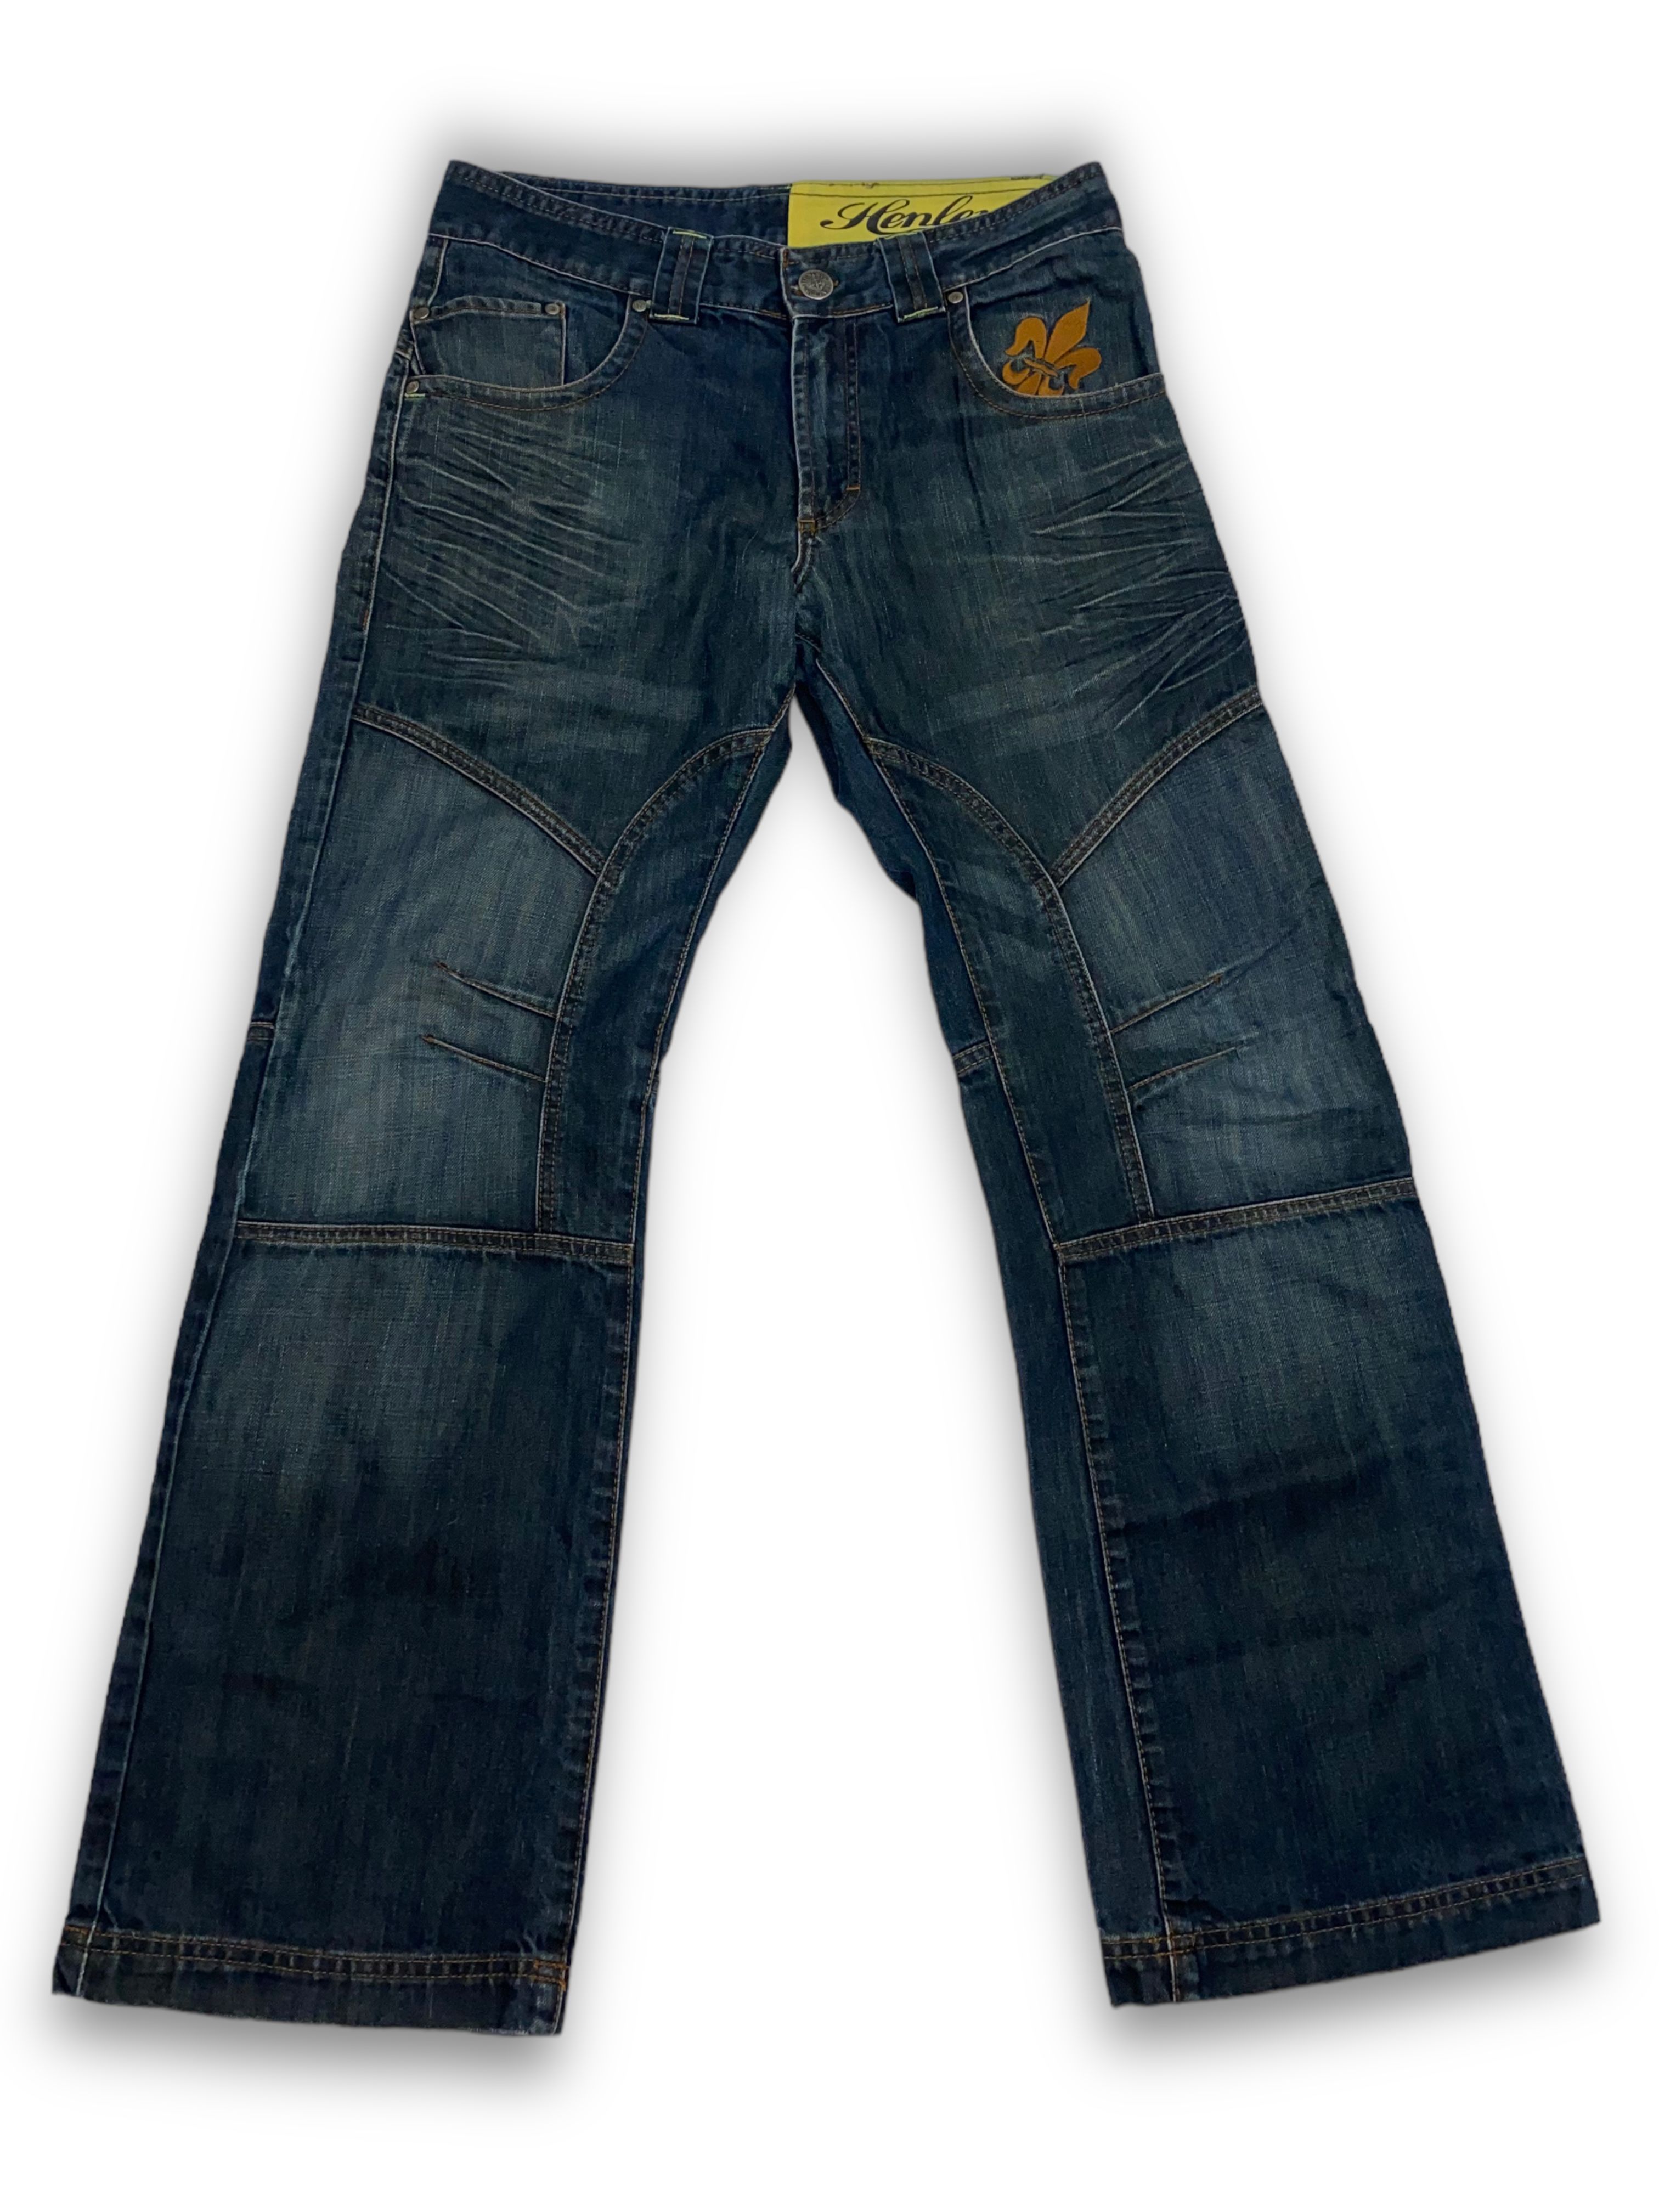 Pre-owned 1990x Clothing X Avant Garde 90's Henleys Jeanswear Vintage Deep Blue Y2k Denim Jeans M521 (size 33)